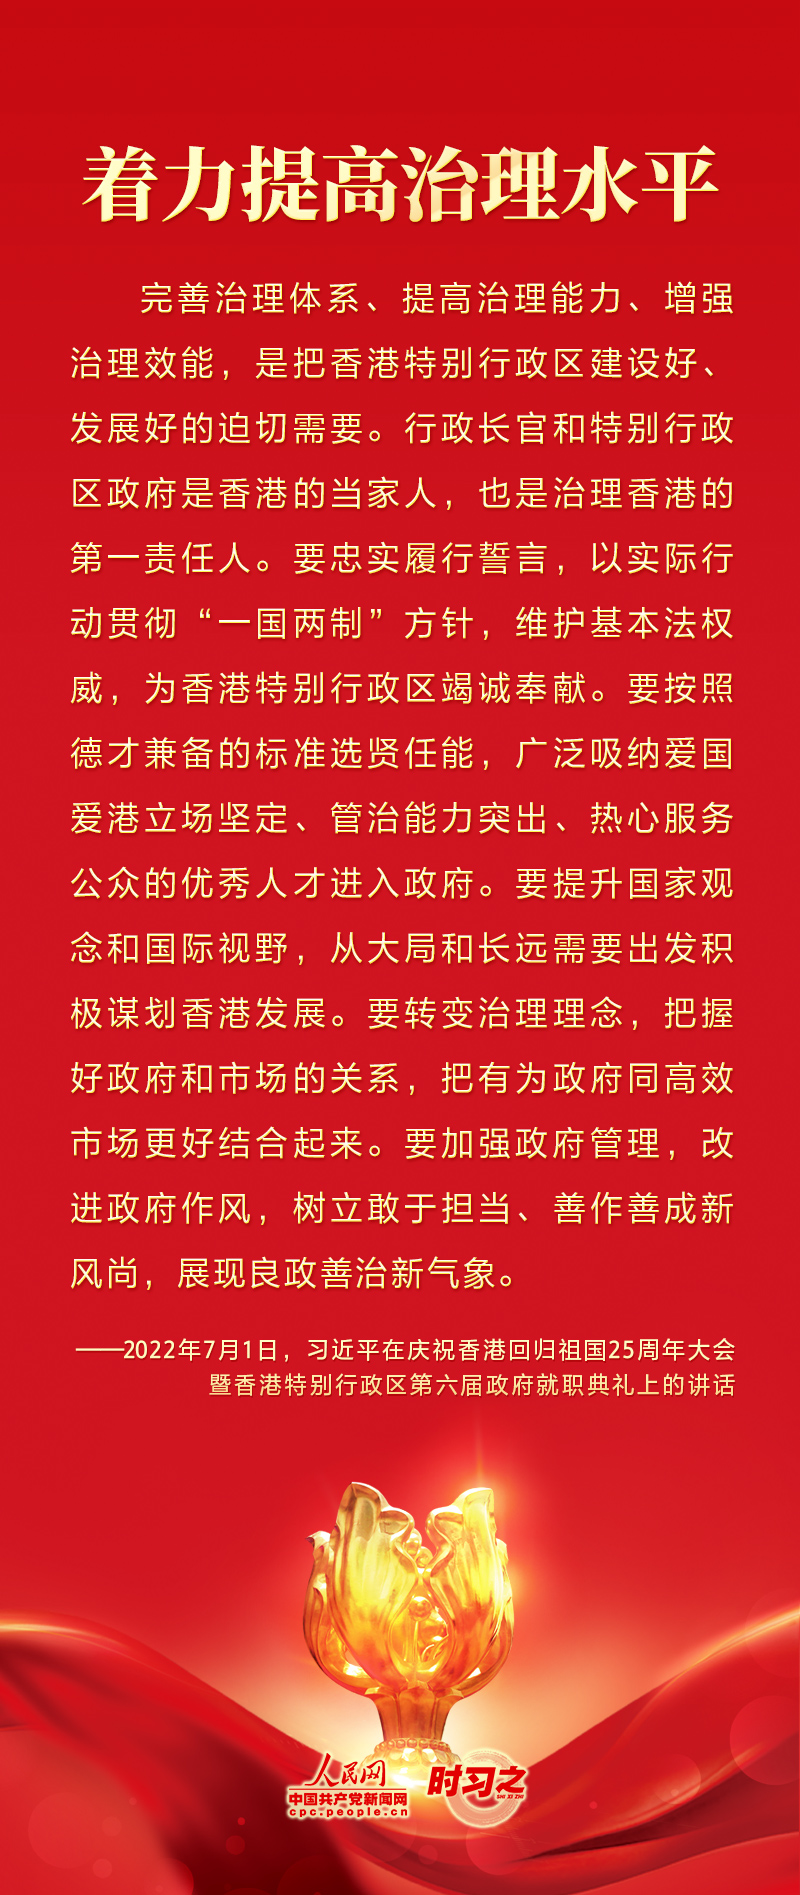 明珠耀香江|共同创造更加美好的生活 习近平就香港发展提出4点希望